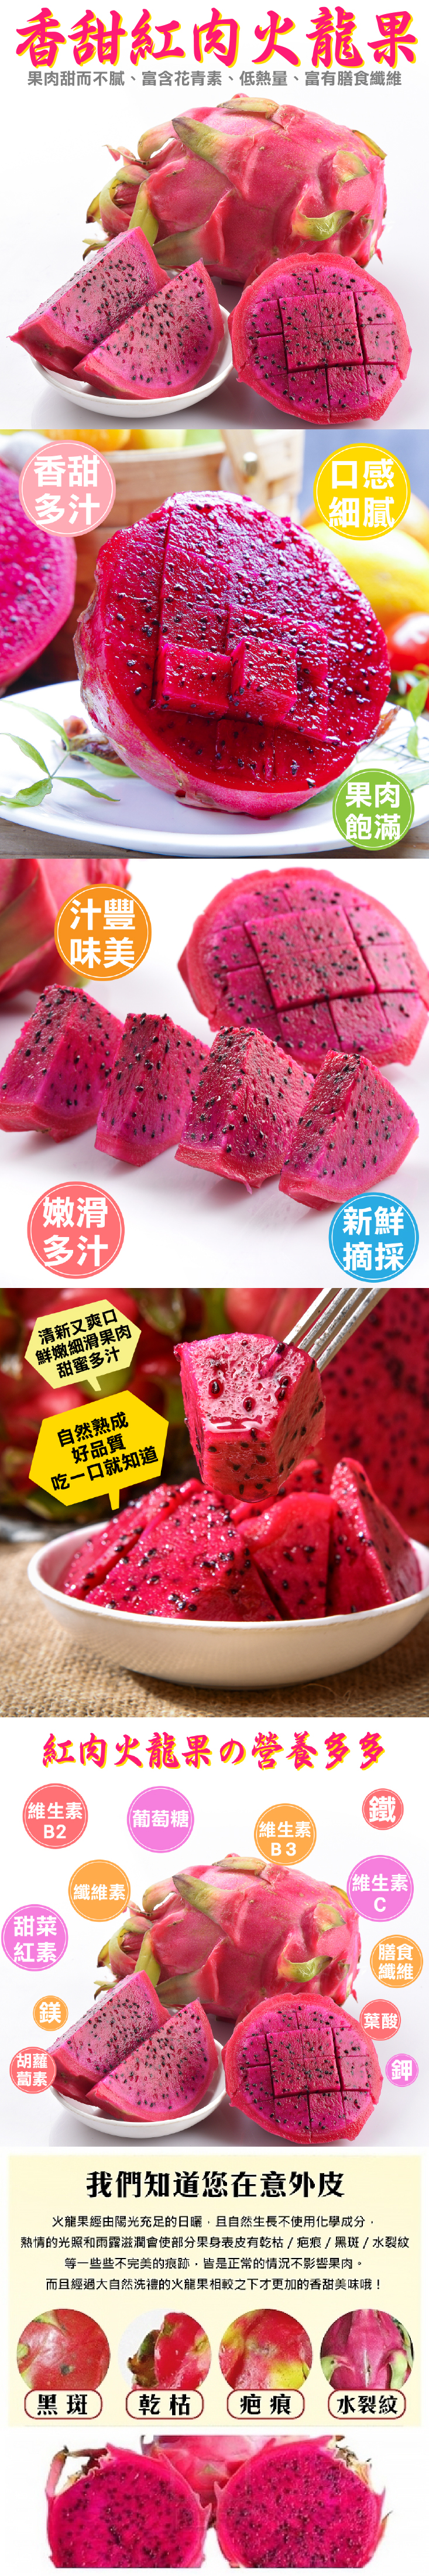 【果之蔬】台灣嚴選紅肉火龍果10斤原裝箱